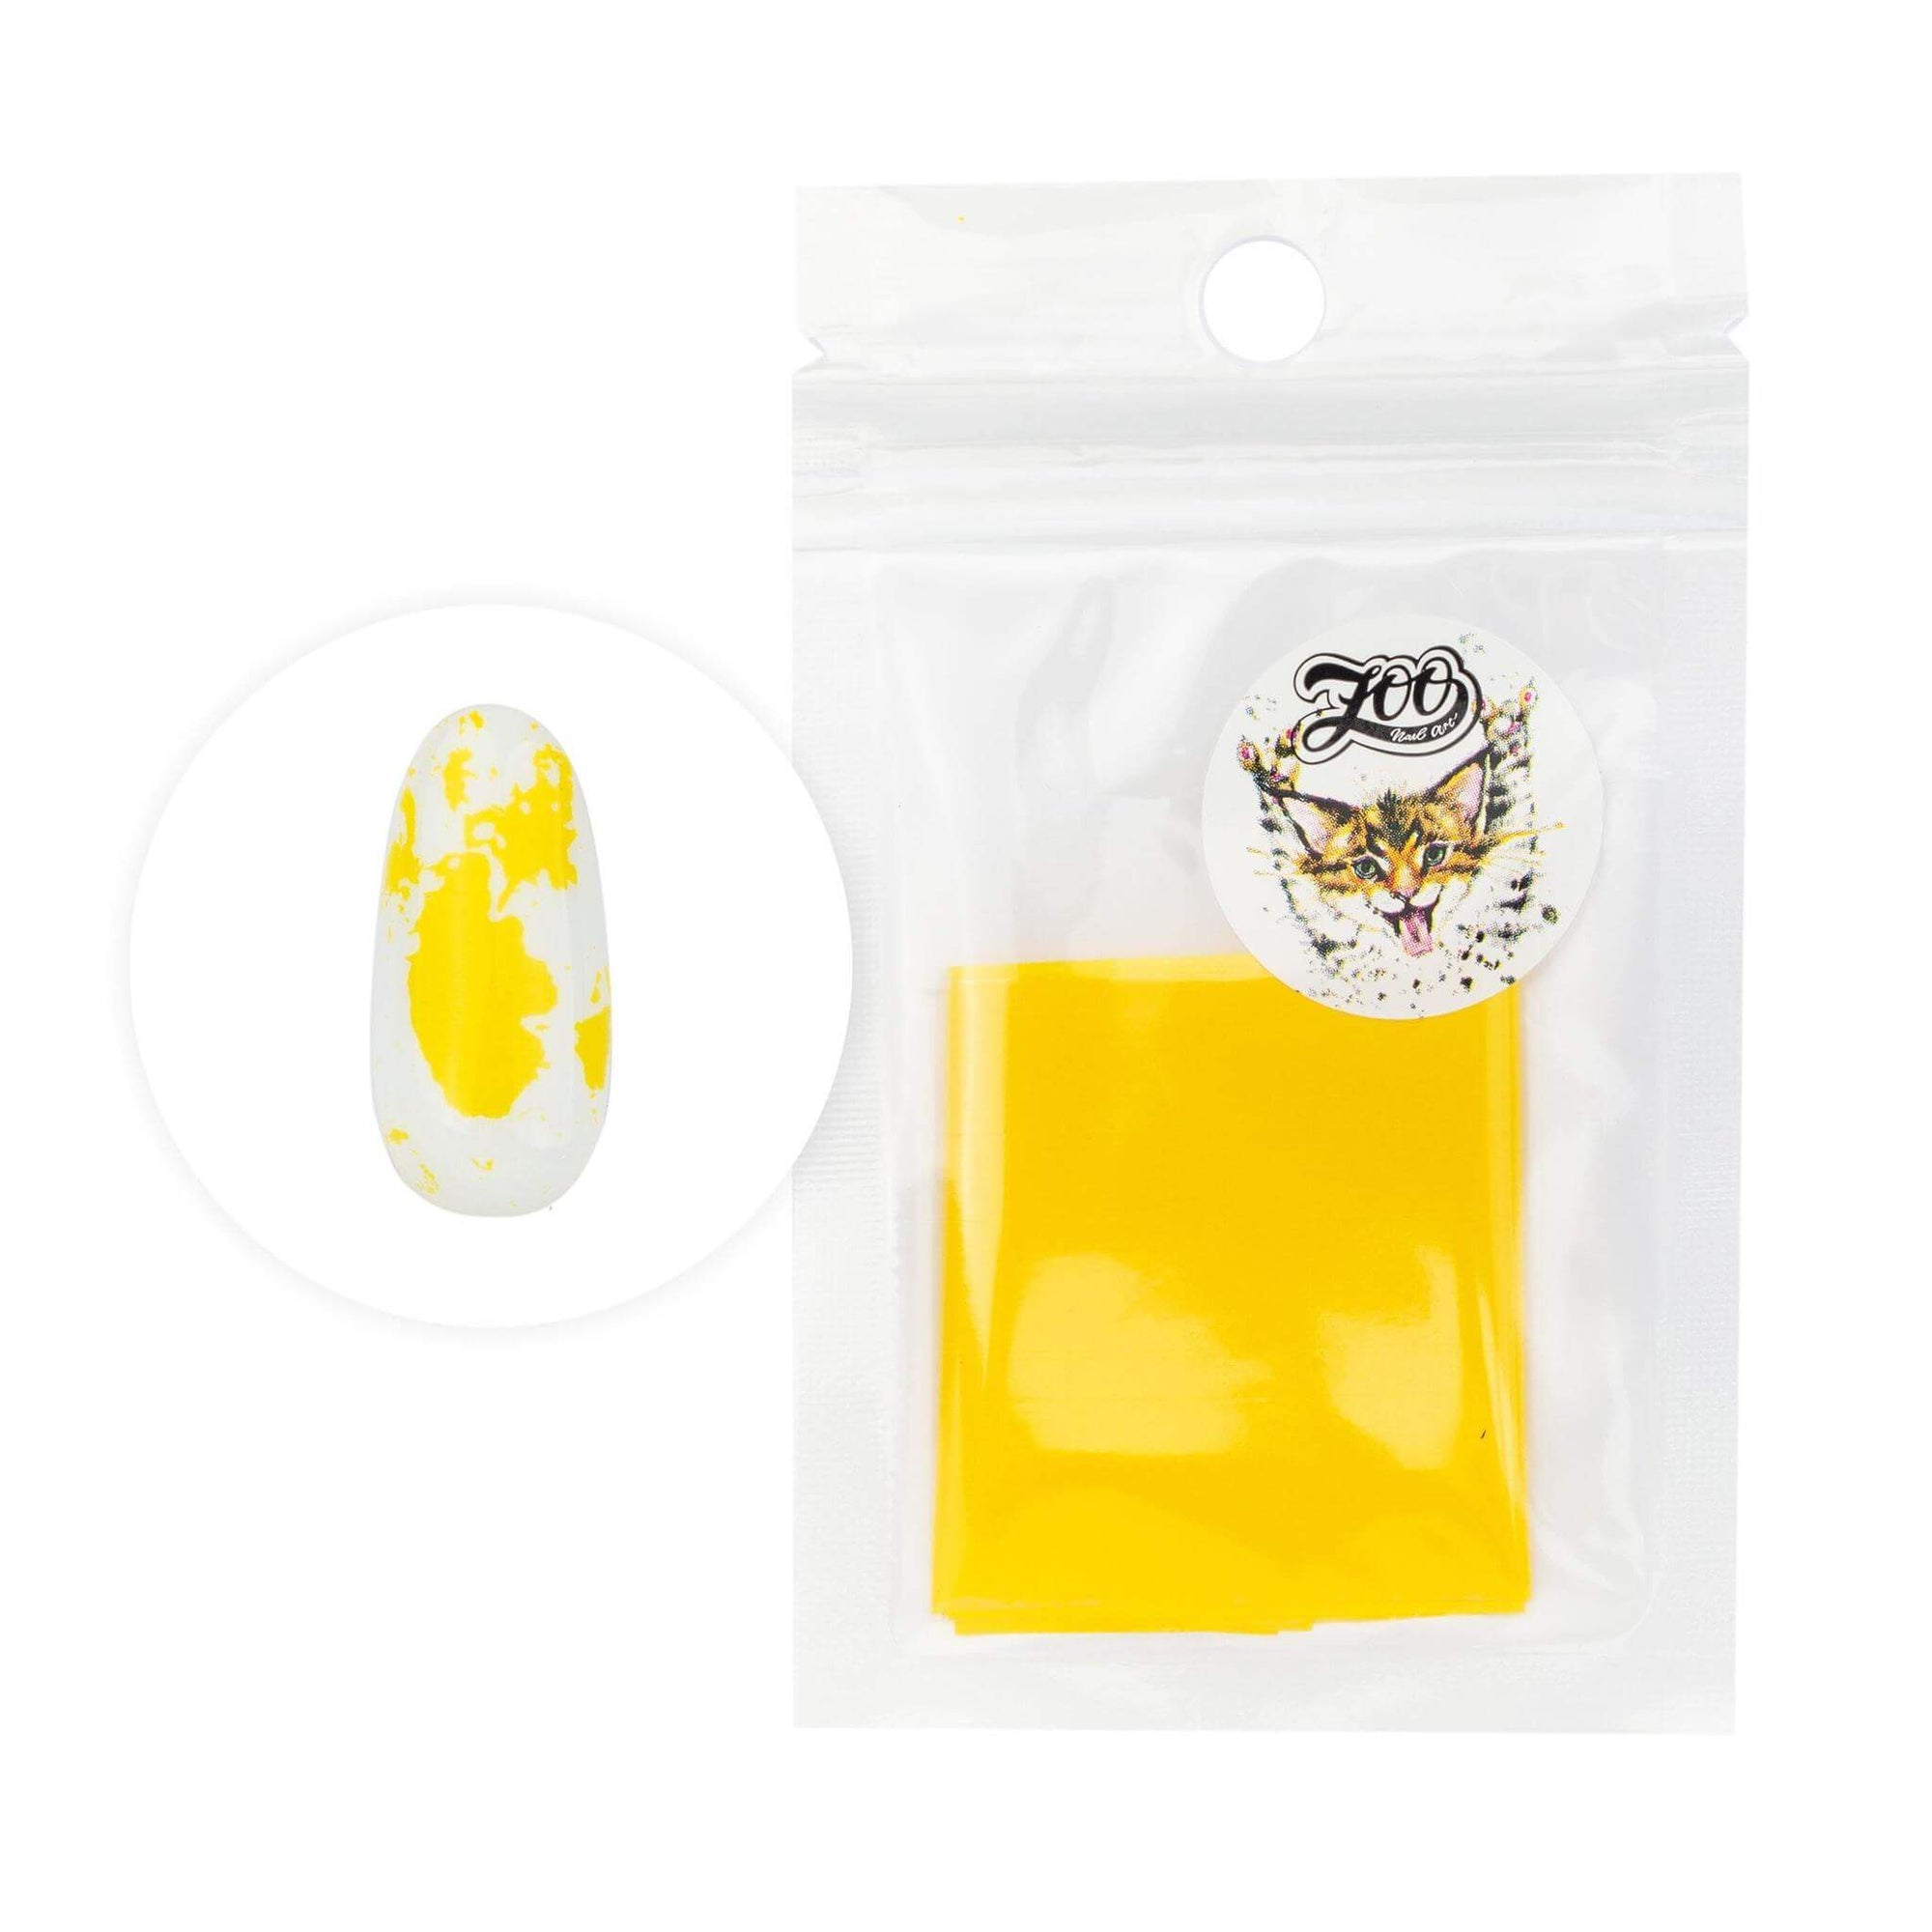 Zoo Nail Art Transfer Foil- Yellow